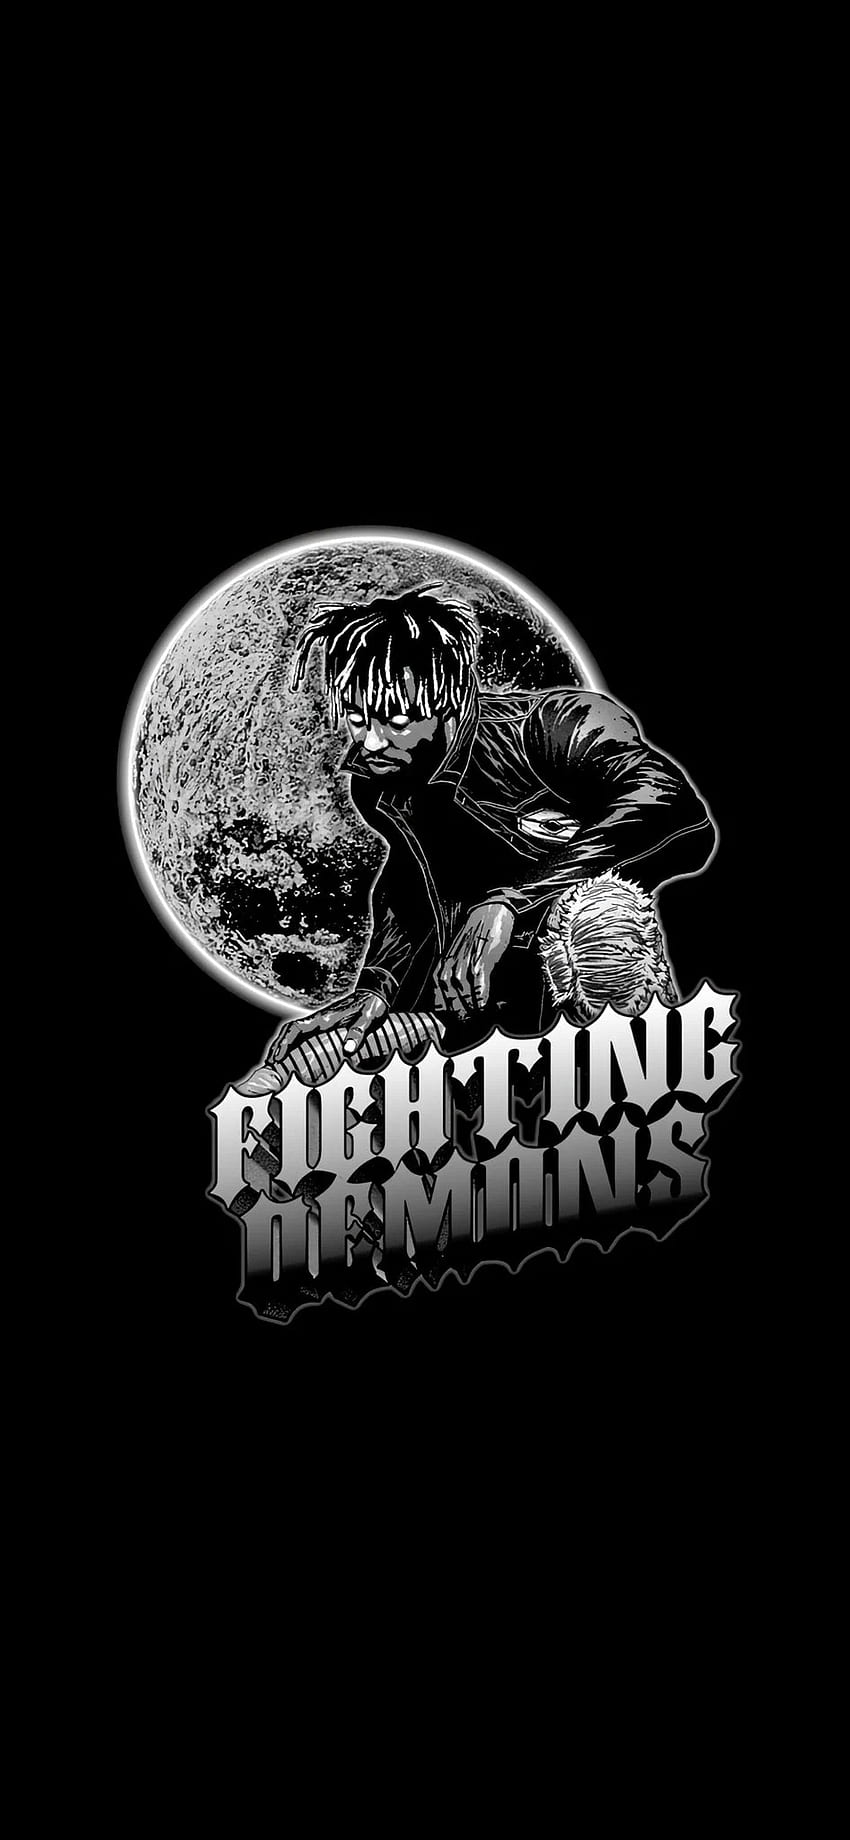 Juice Wrld Wallpaper 4K, Fighting Demons, American rapper